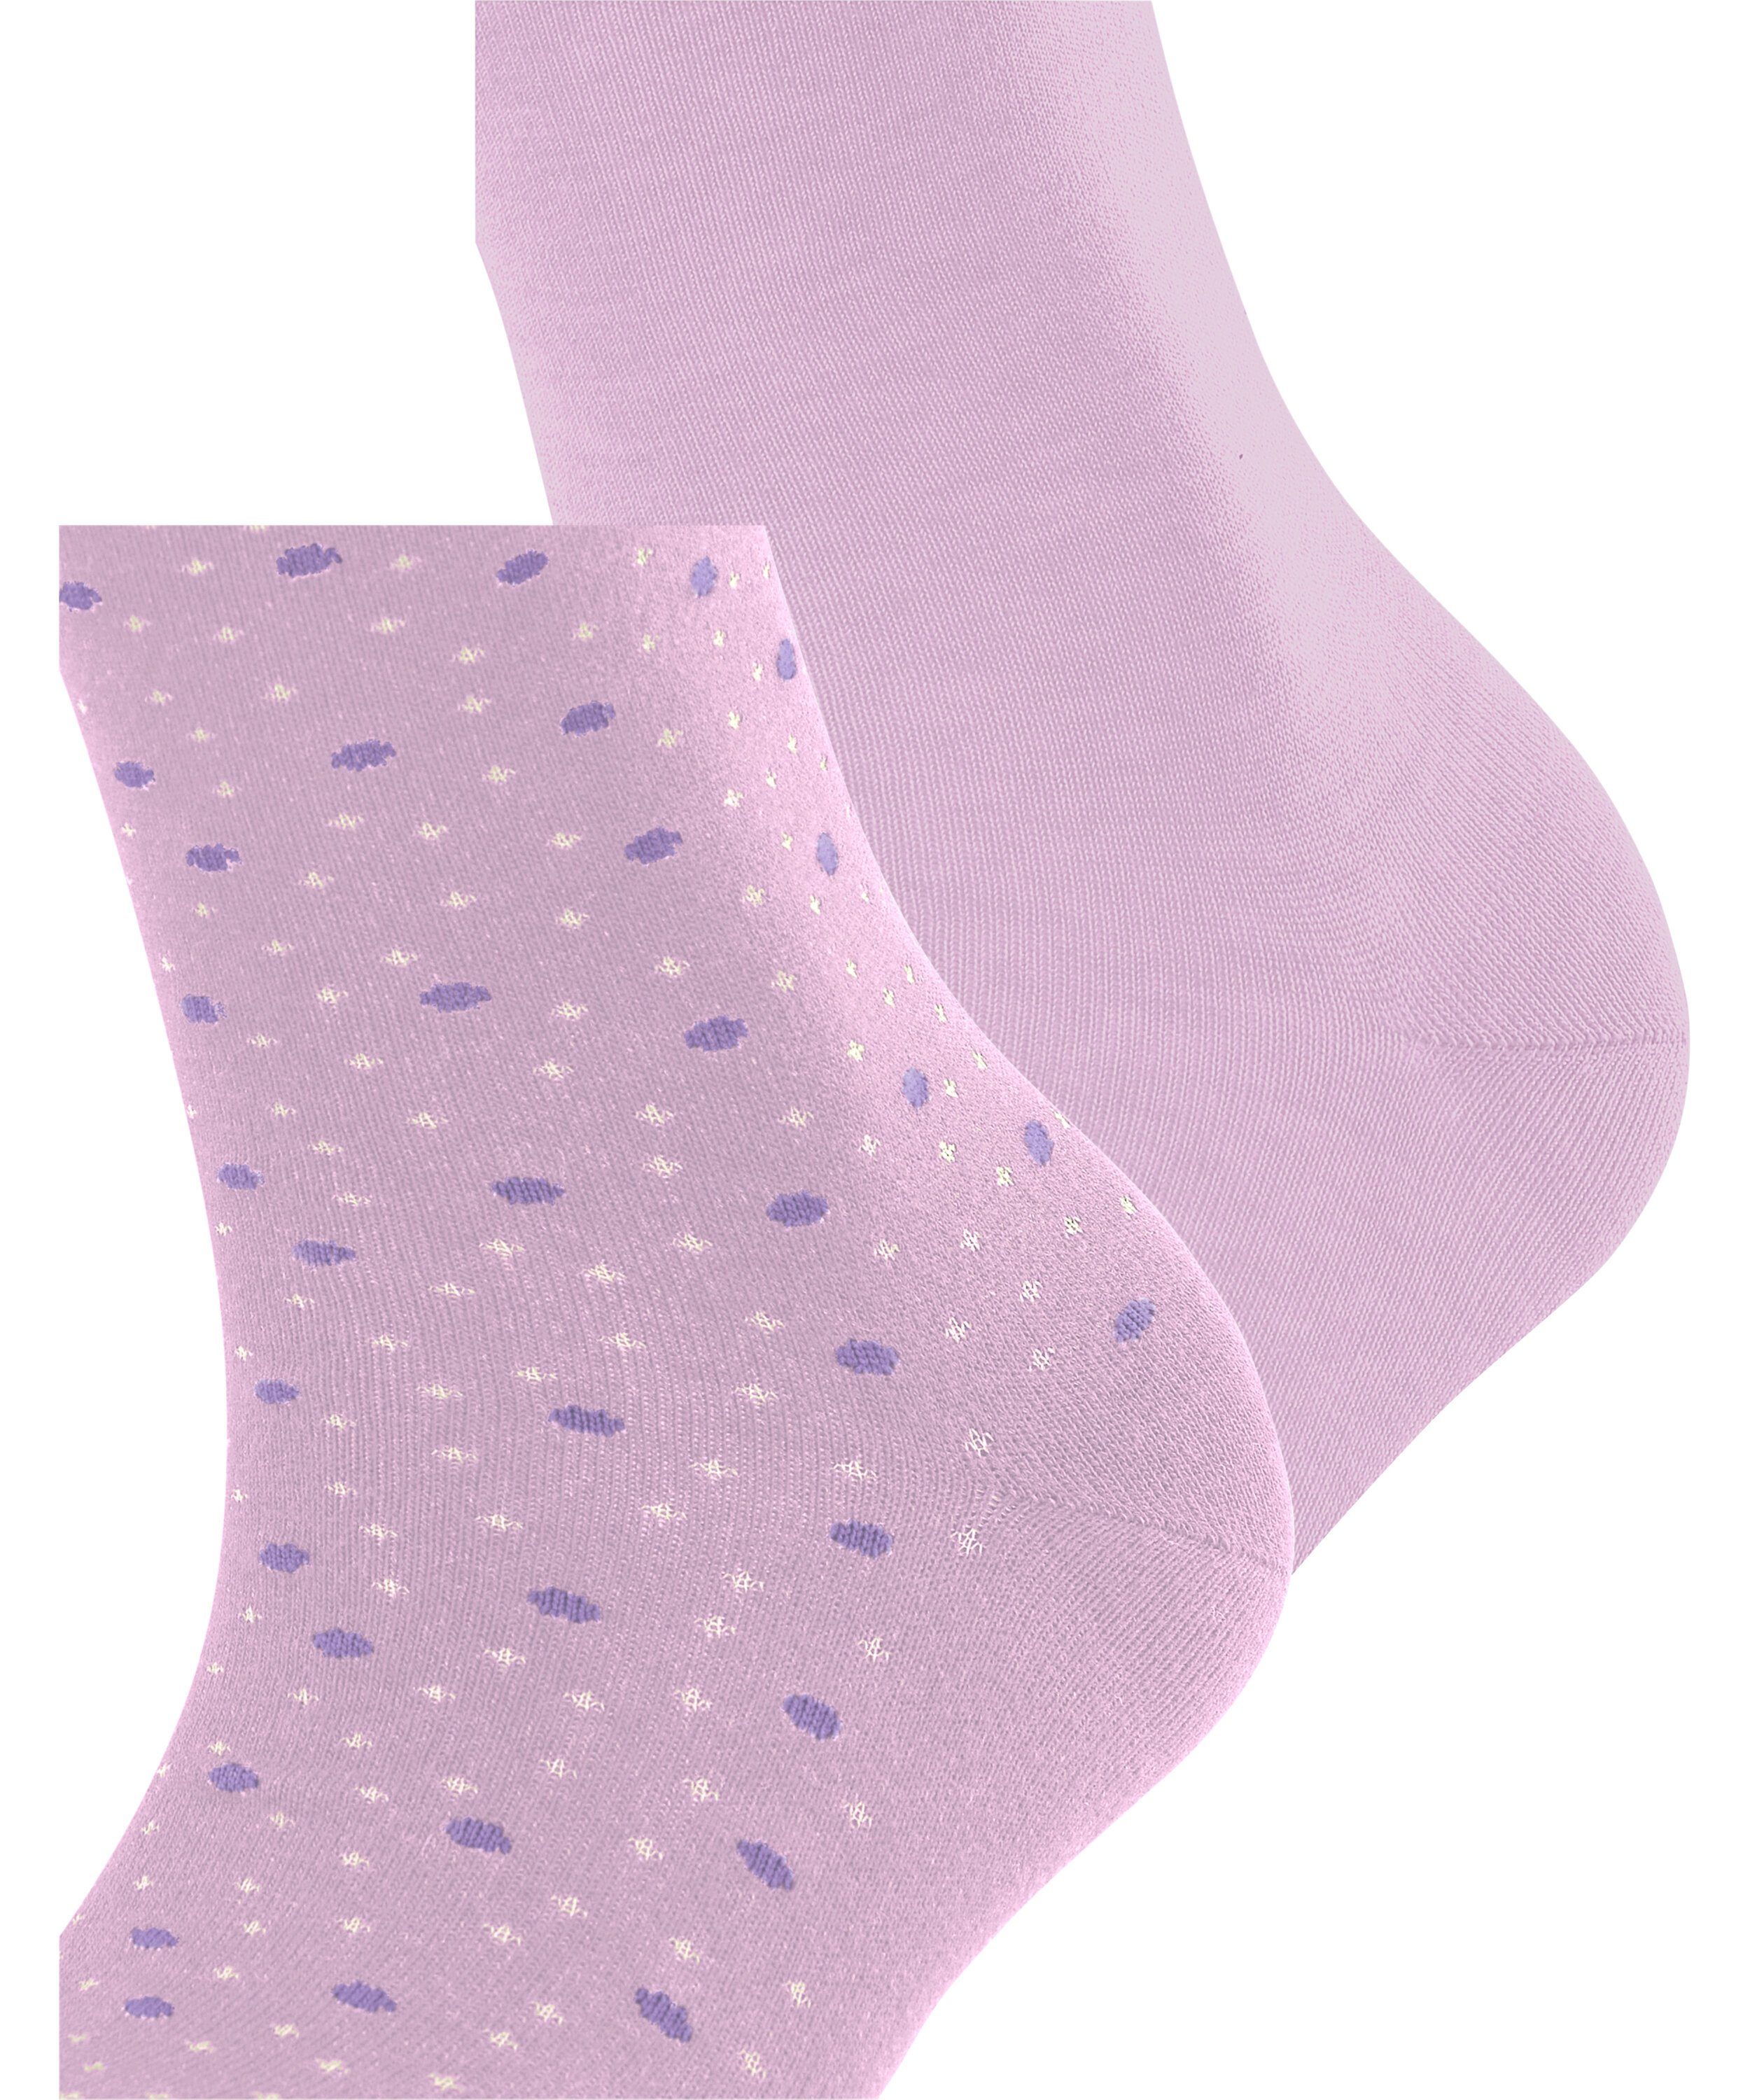 Esprit Socken Playful Dot lupine (8299) 2-Pack (2-Paar)